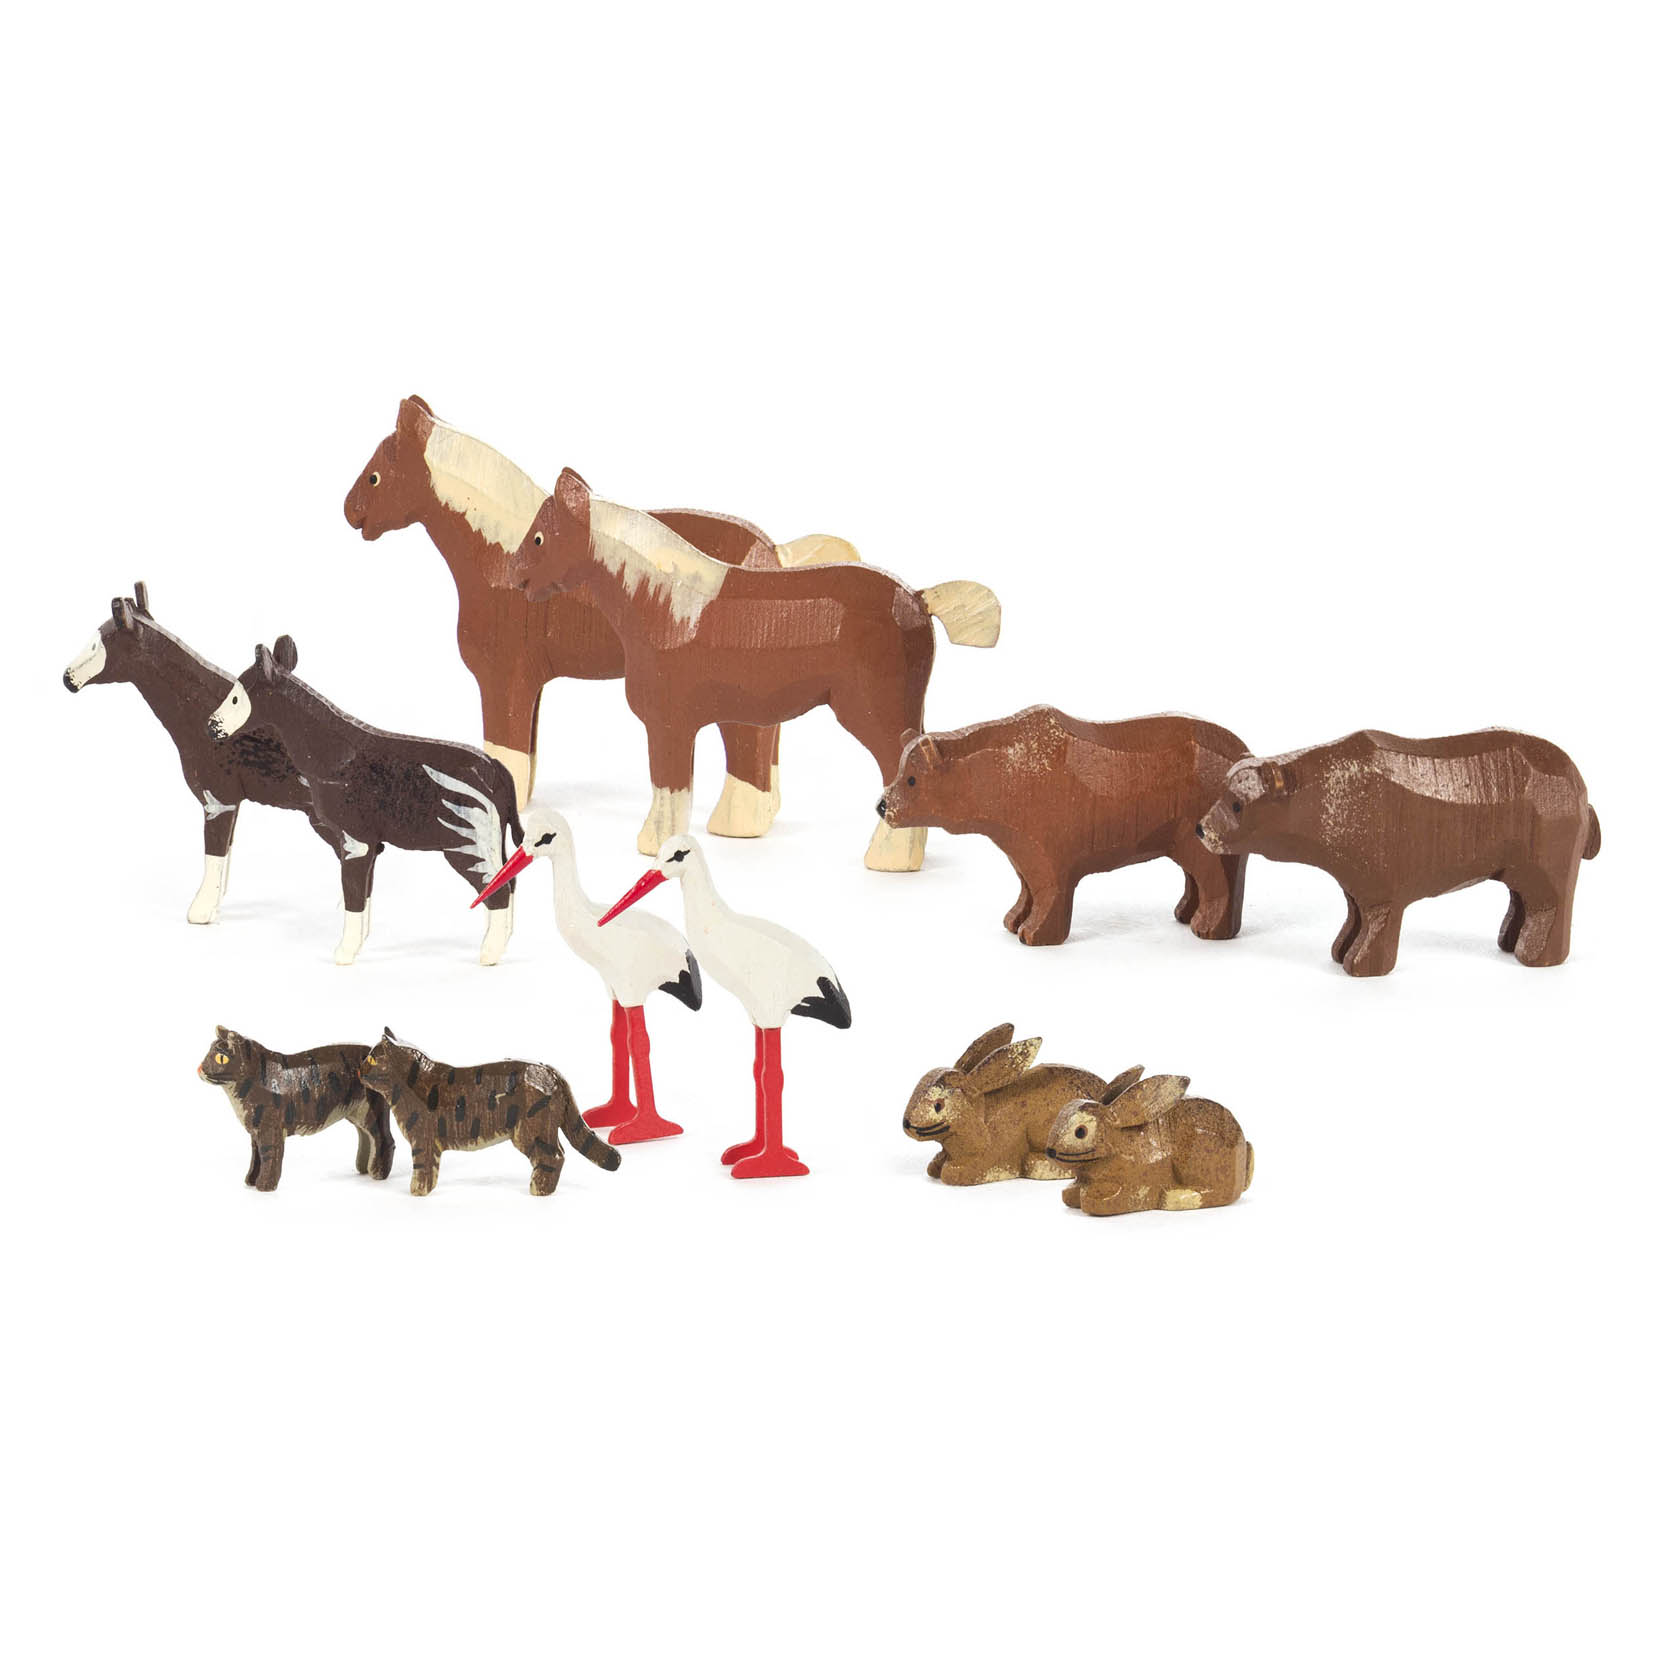 Ergänzung 2 zu Arche Noah (12) Kaltblutpferd, Braunbär, Okapi, Hase, Weißstorch und Katze im Dregeno Online Shop günstig kaufen